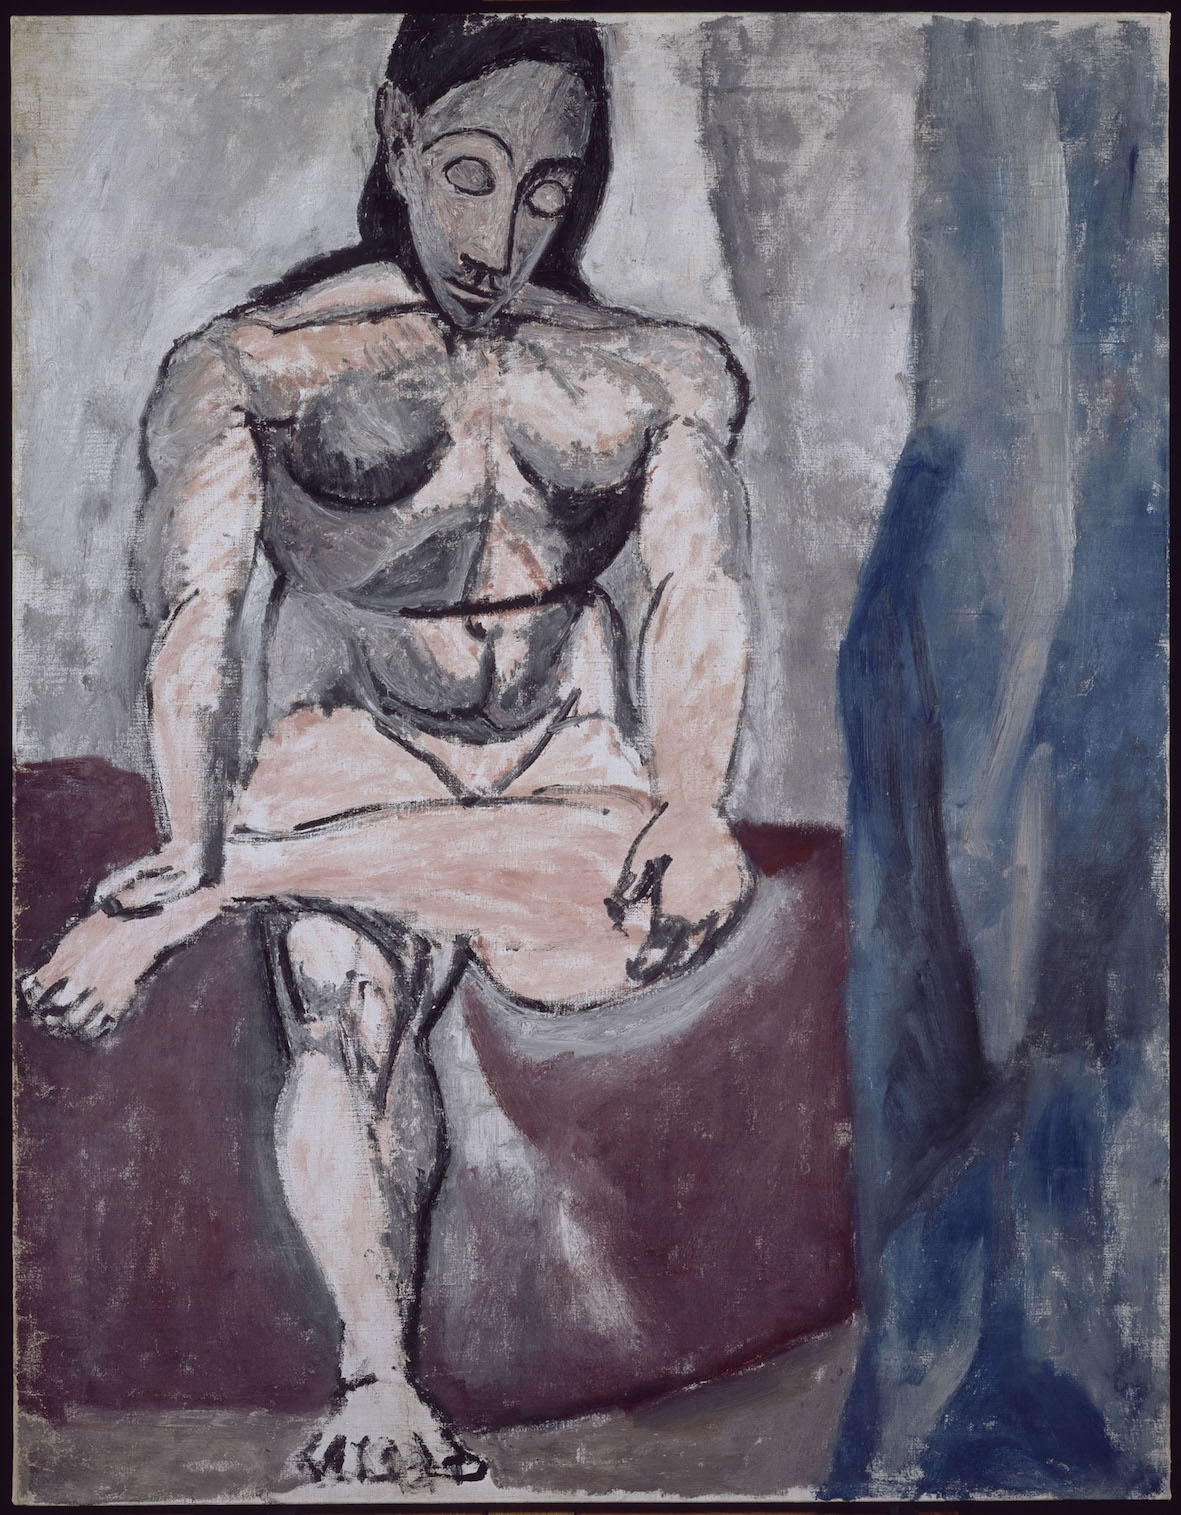 Pablo Picasso, Nudo seduto, studio per “Les demoiselles de Avignon”, 1906-1907 olio su tela, 121x93,5 cm Paris, Musée National Picasso. Credito fotografico: © RMN-Grand Palais (Musée national Picasso-Paris) / René Gabriel Ojéda/dist. Alinari